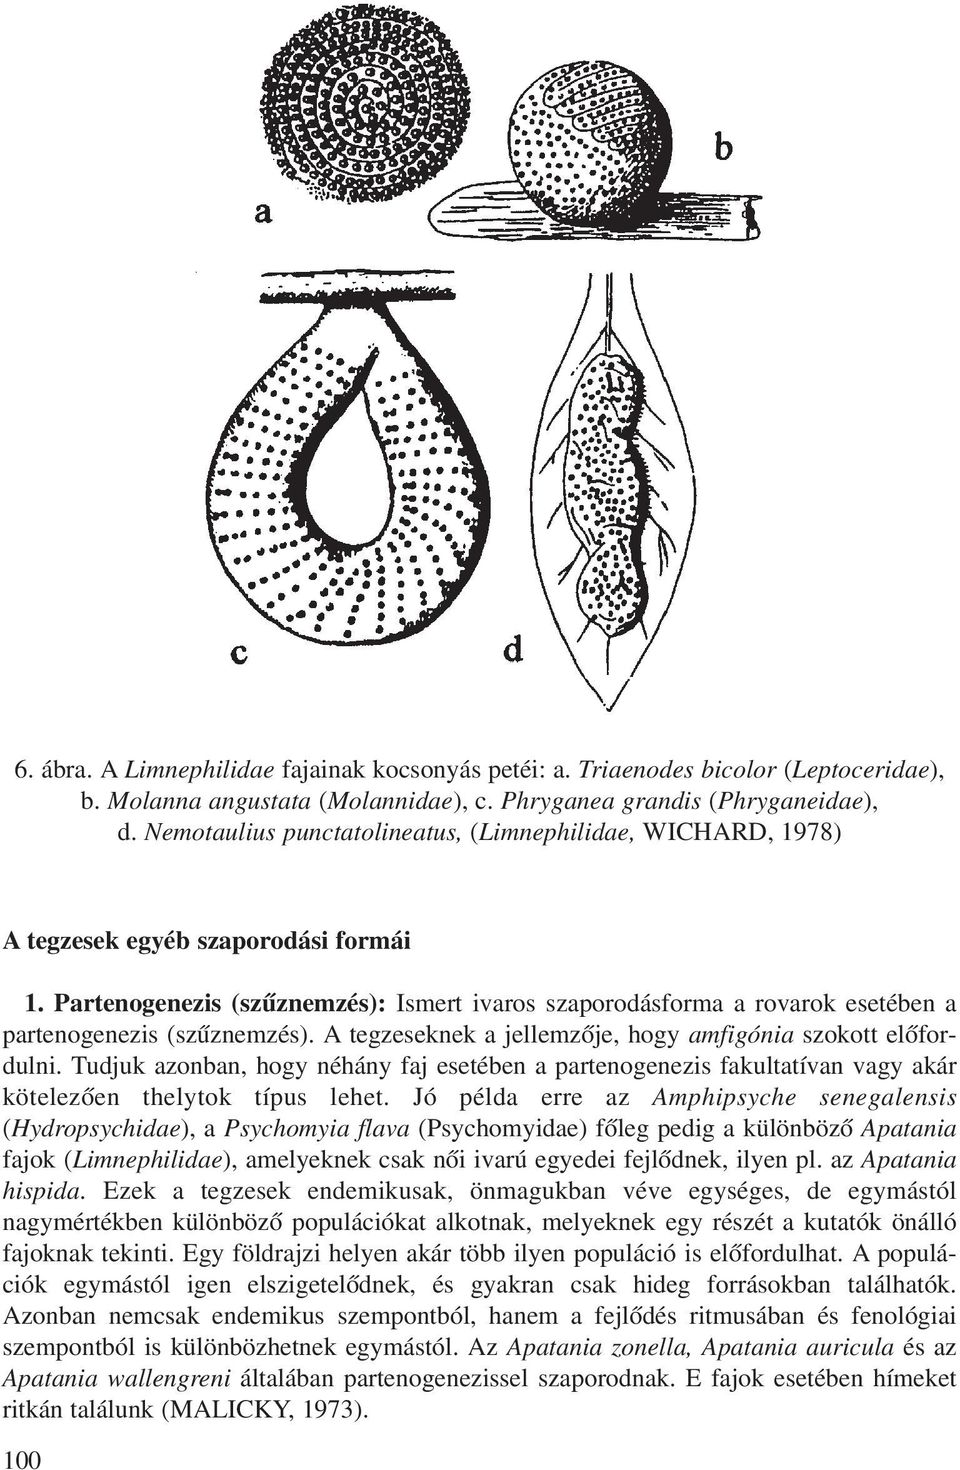 Partenogenezis (szûznemzés): Ismert ivaros szaporodásforma a rovarok esetében a partenogenezis (szûznemzés). A tegzeseknek a jellemzõje, hogy amfigónia szokott elõfordulni.